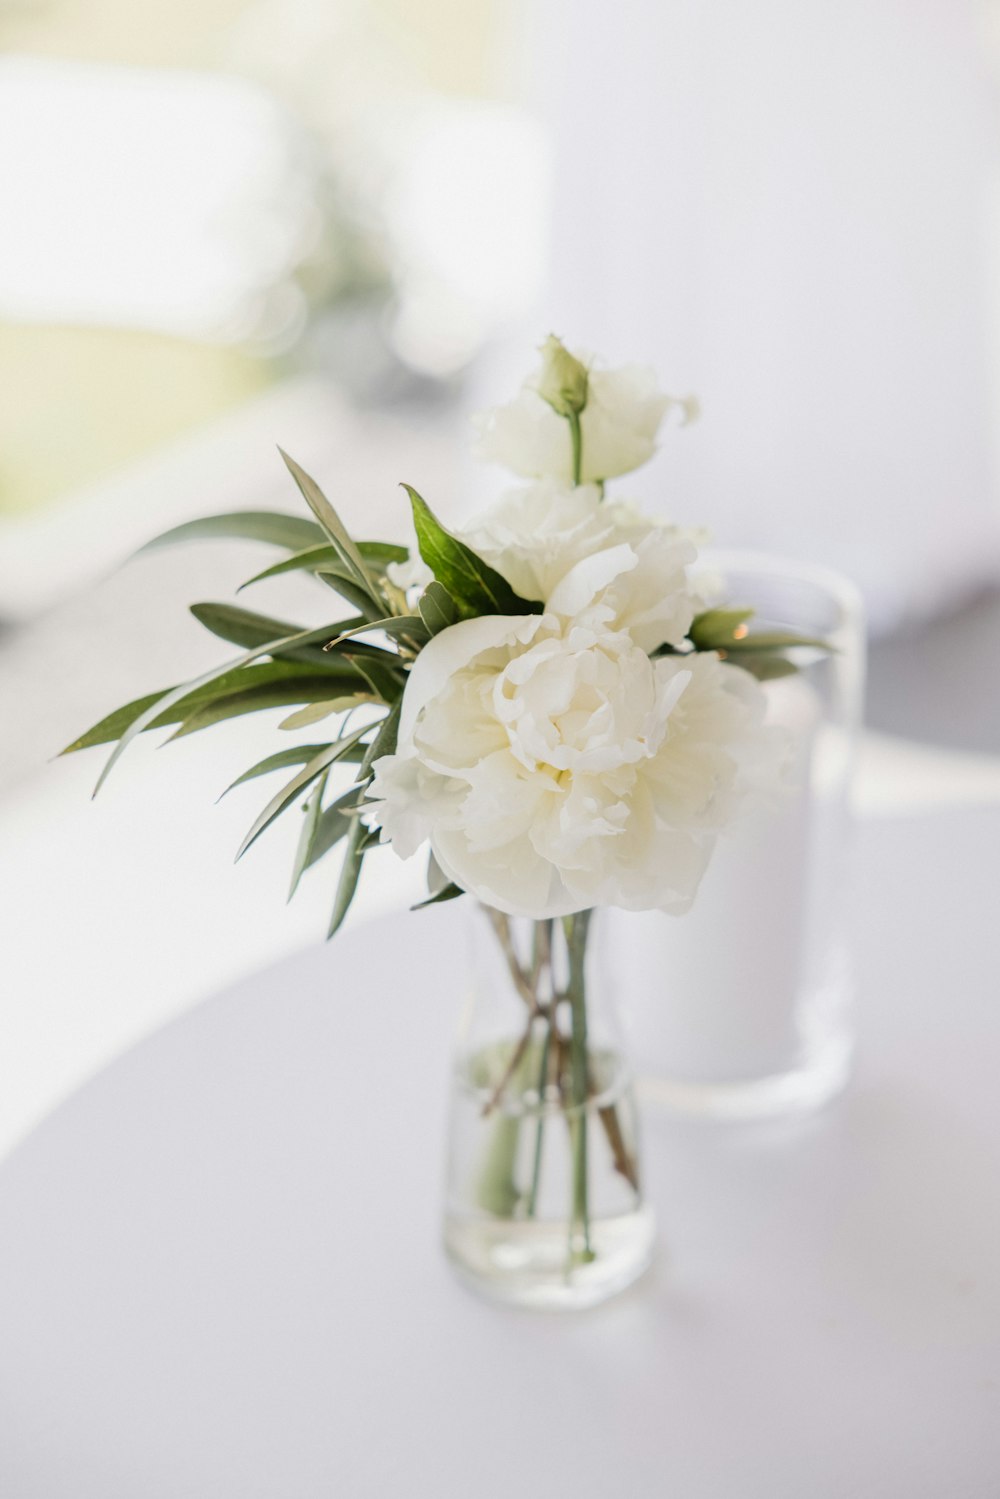 fiore bianco in vaso di vetro trasparente